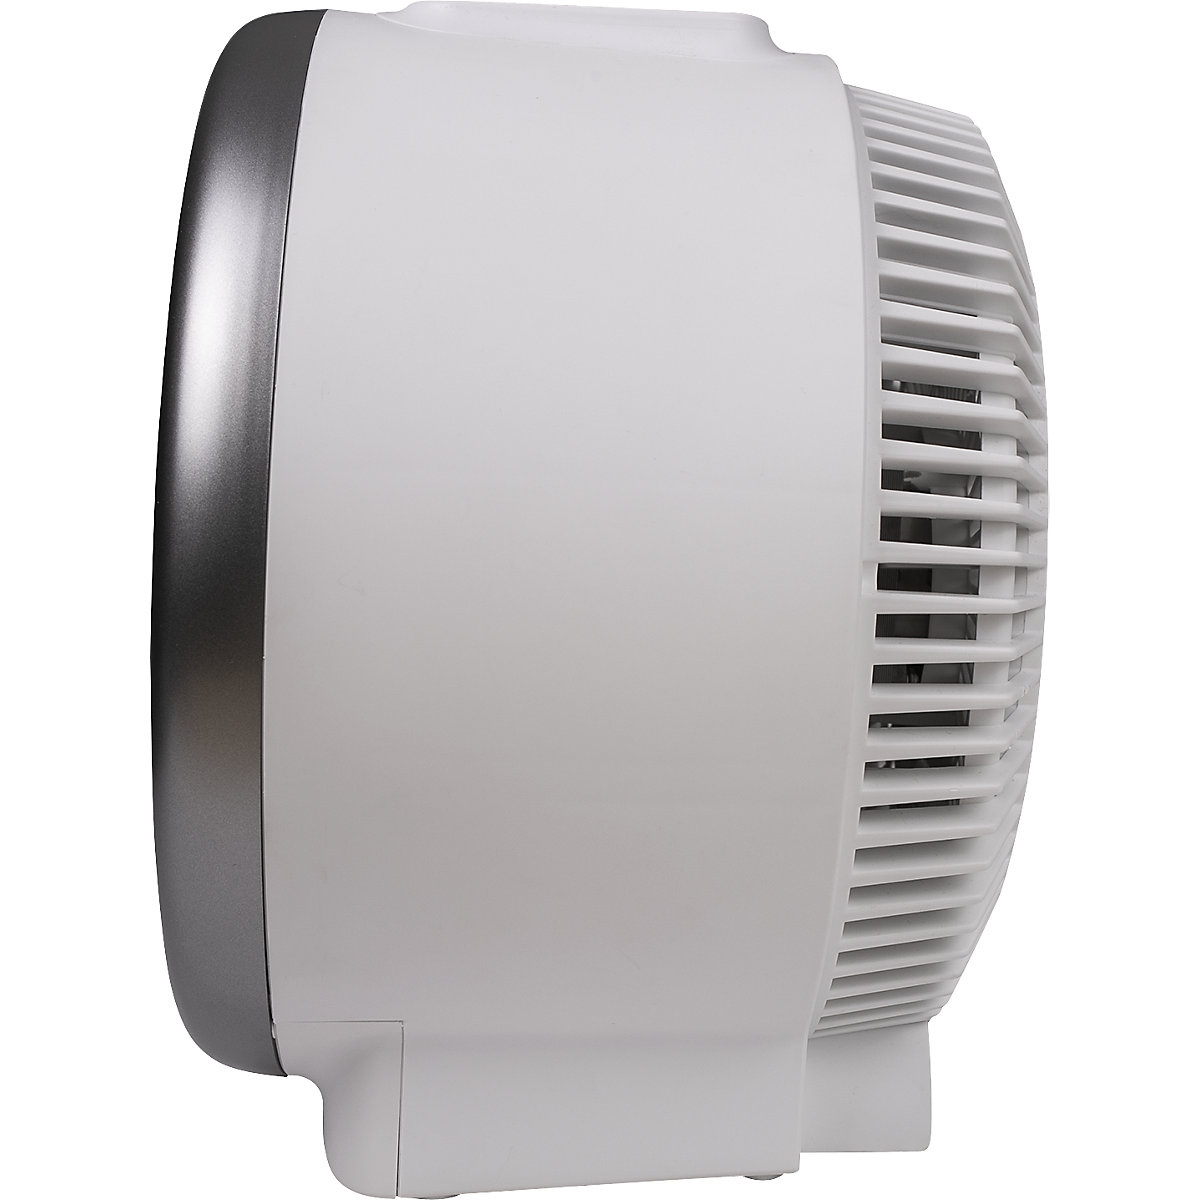 Ventilateur-radiateur soufflant HOT + COLD: h x l x p 275 x 260 x